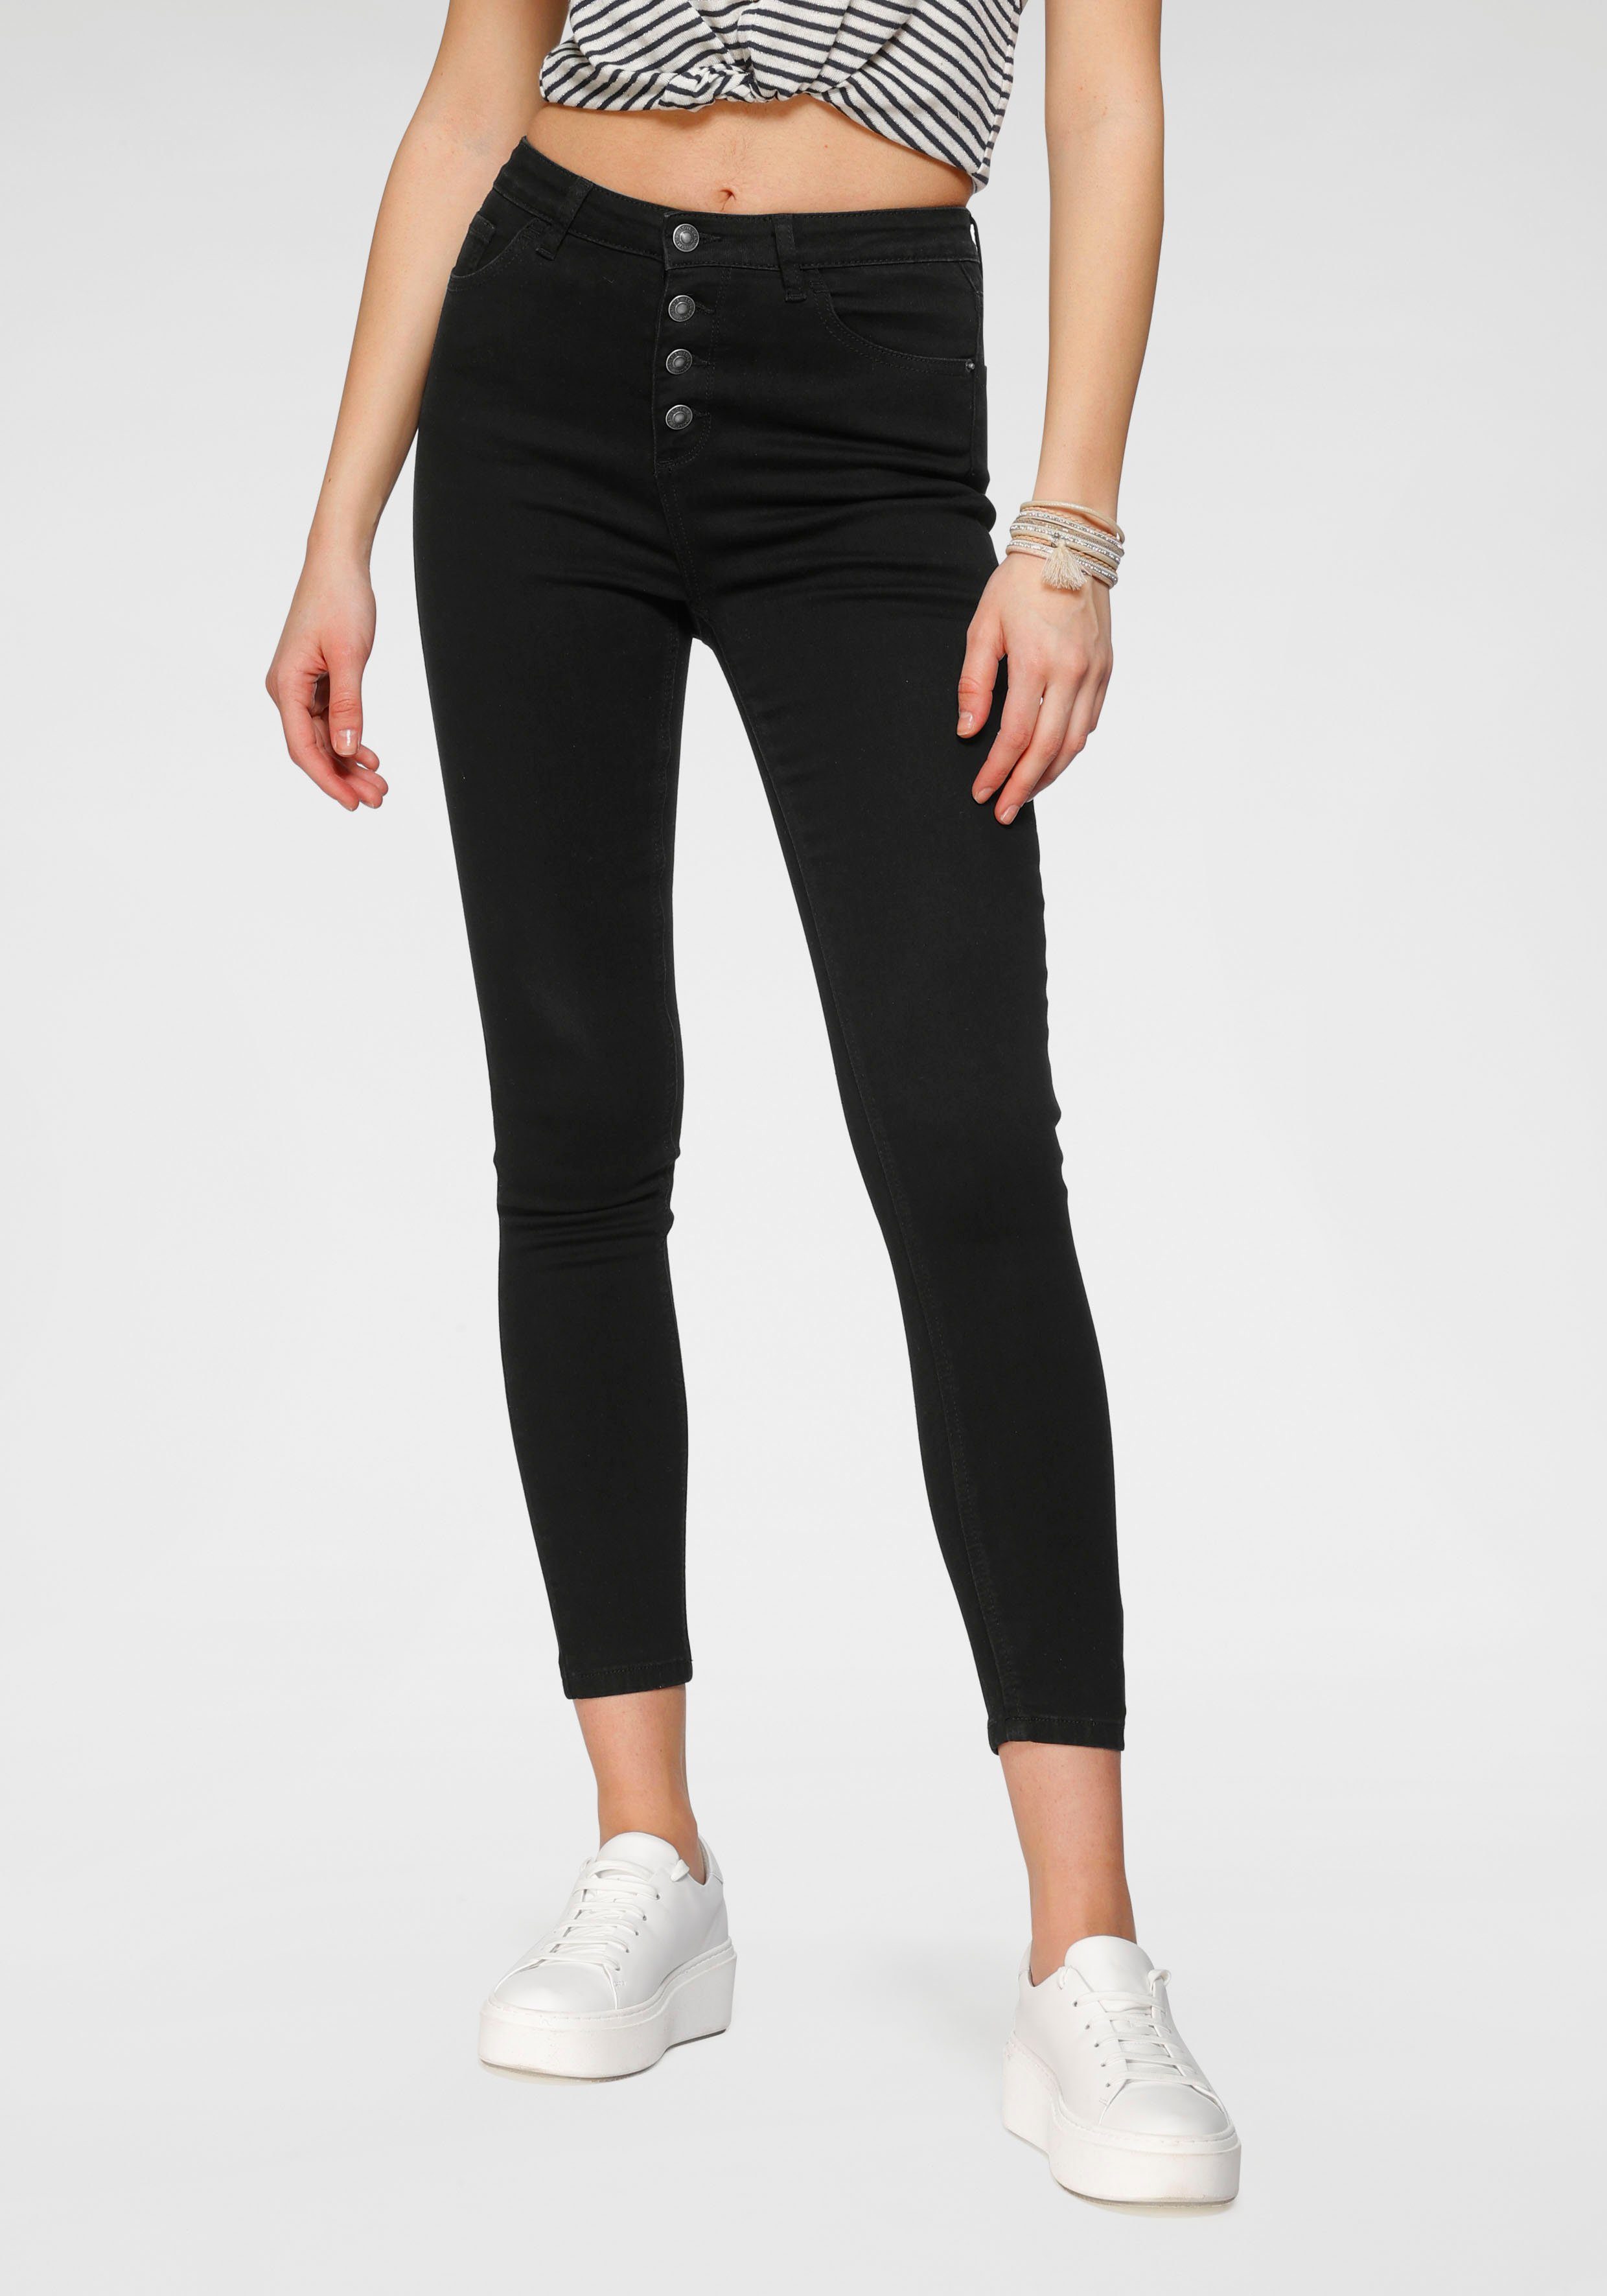 HaILY'S High-waist-Jeans ROMINA